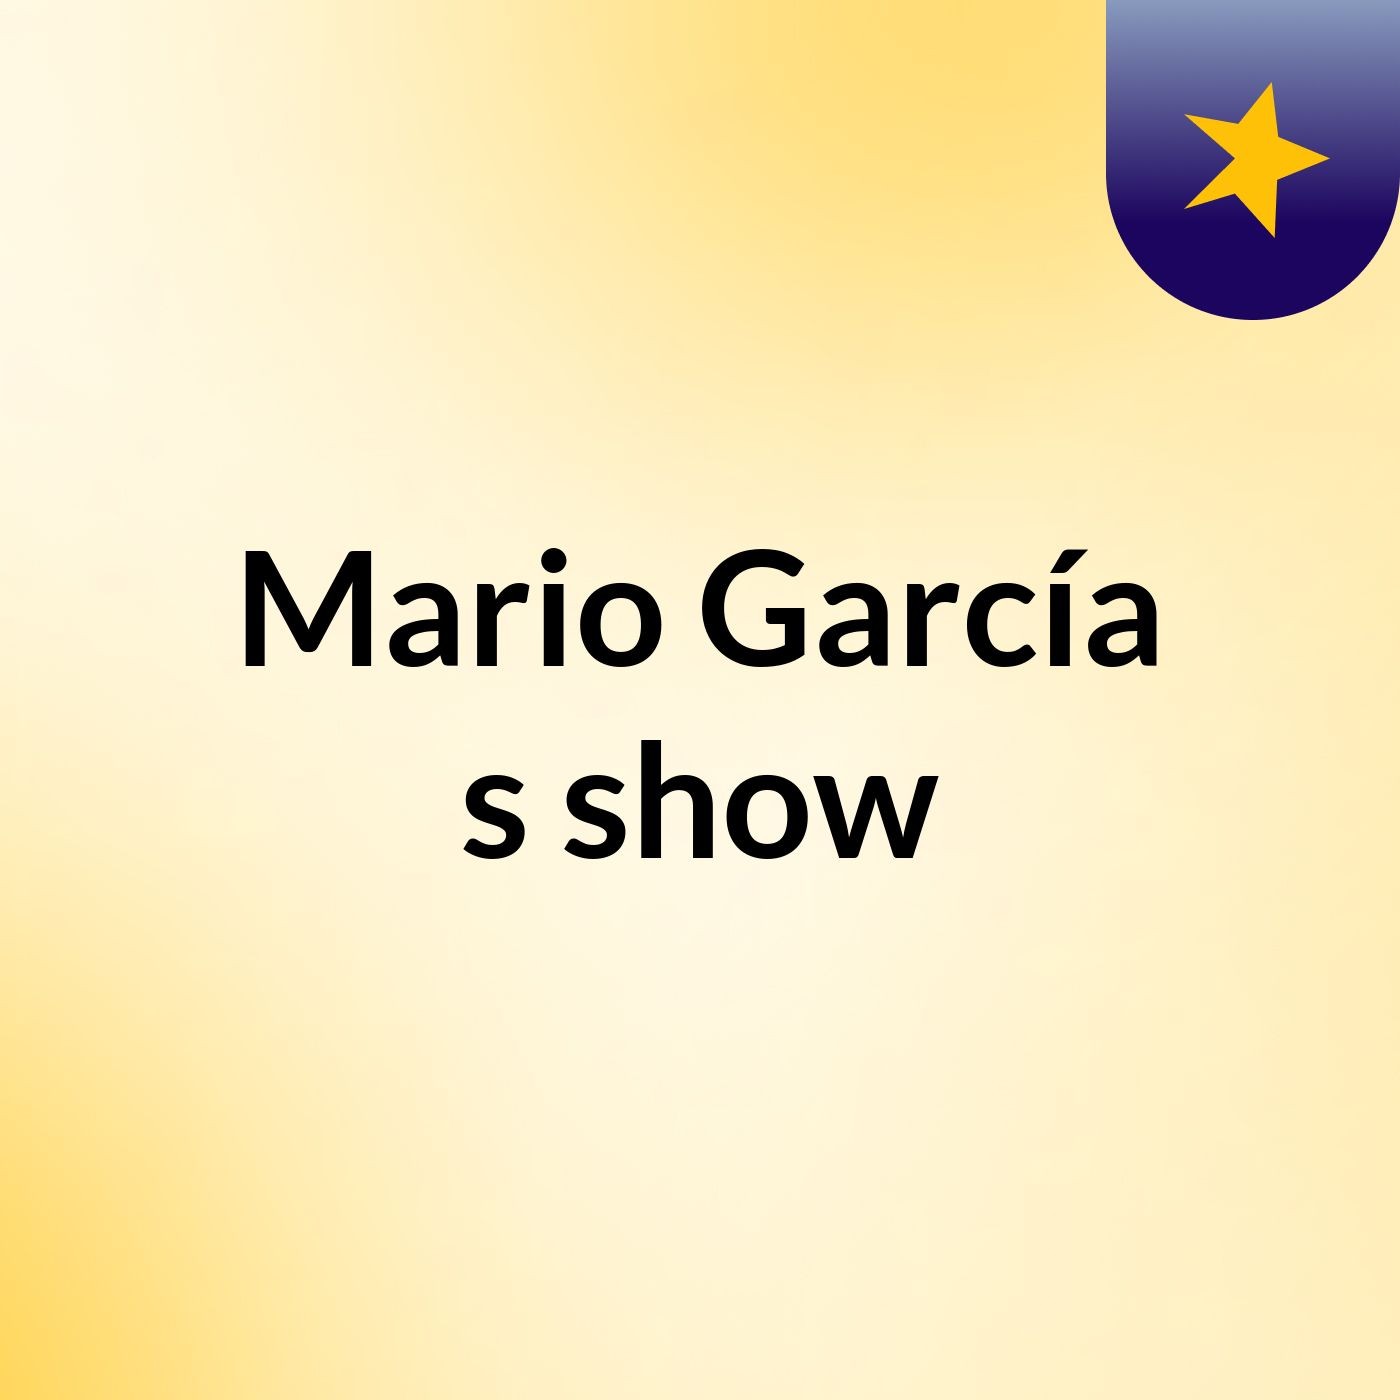 Mario García's show